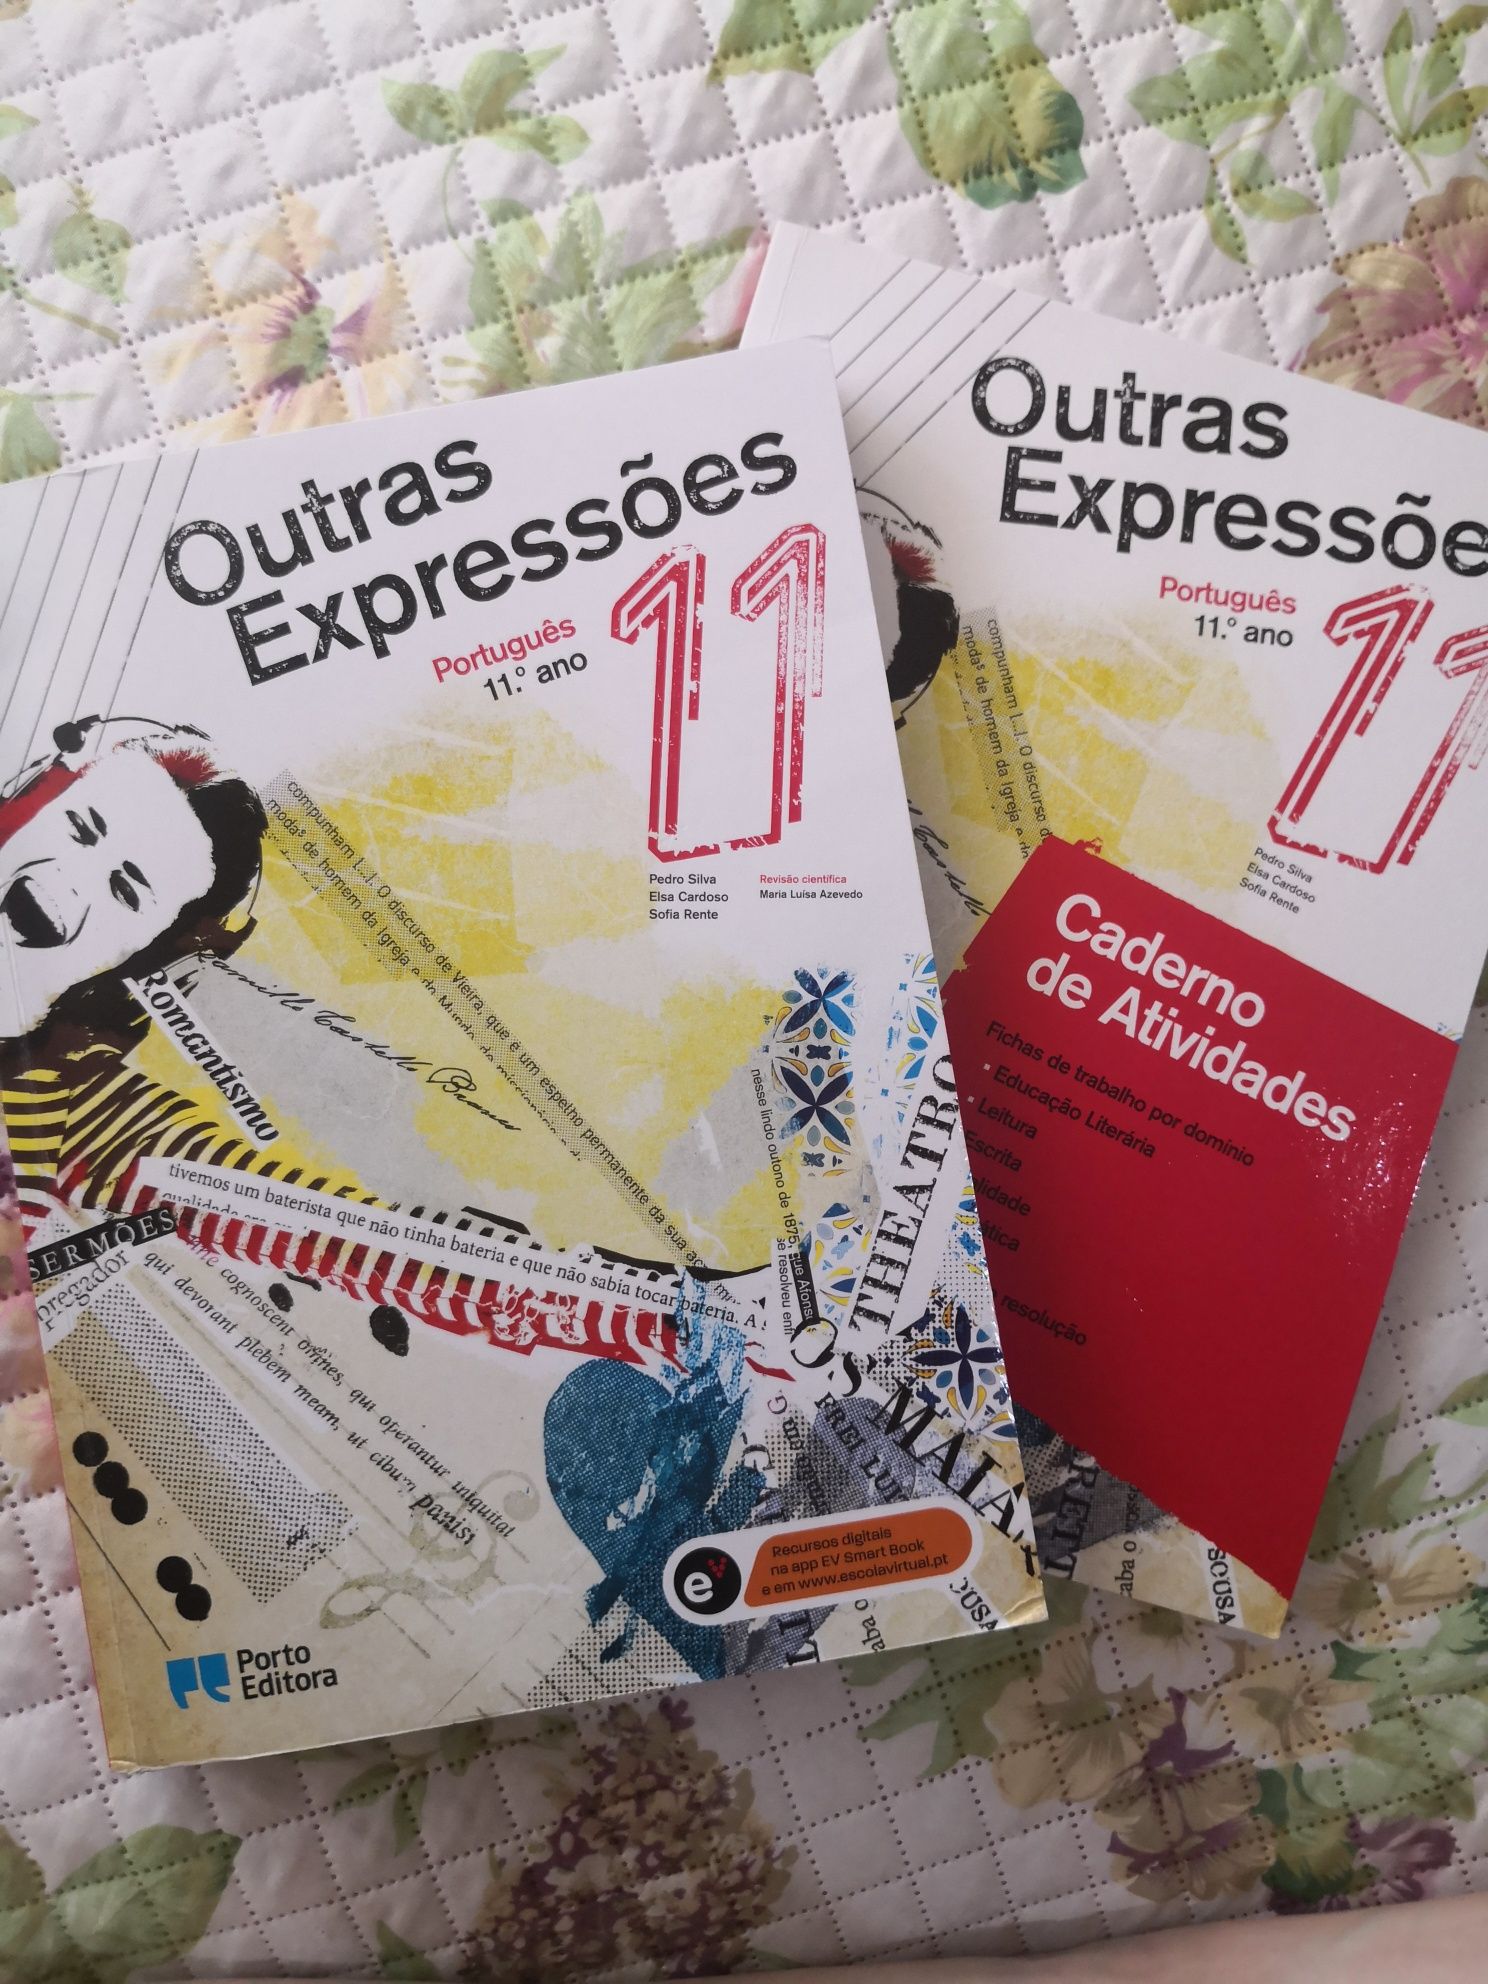 Livro "Outras expressões" - Português 11°